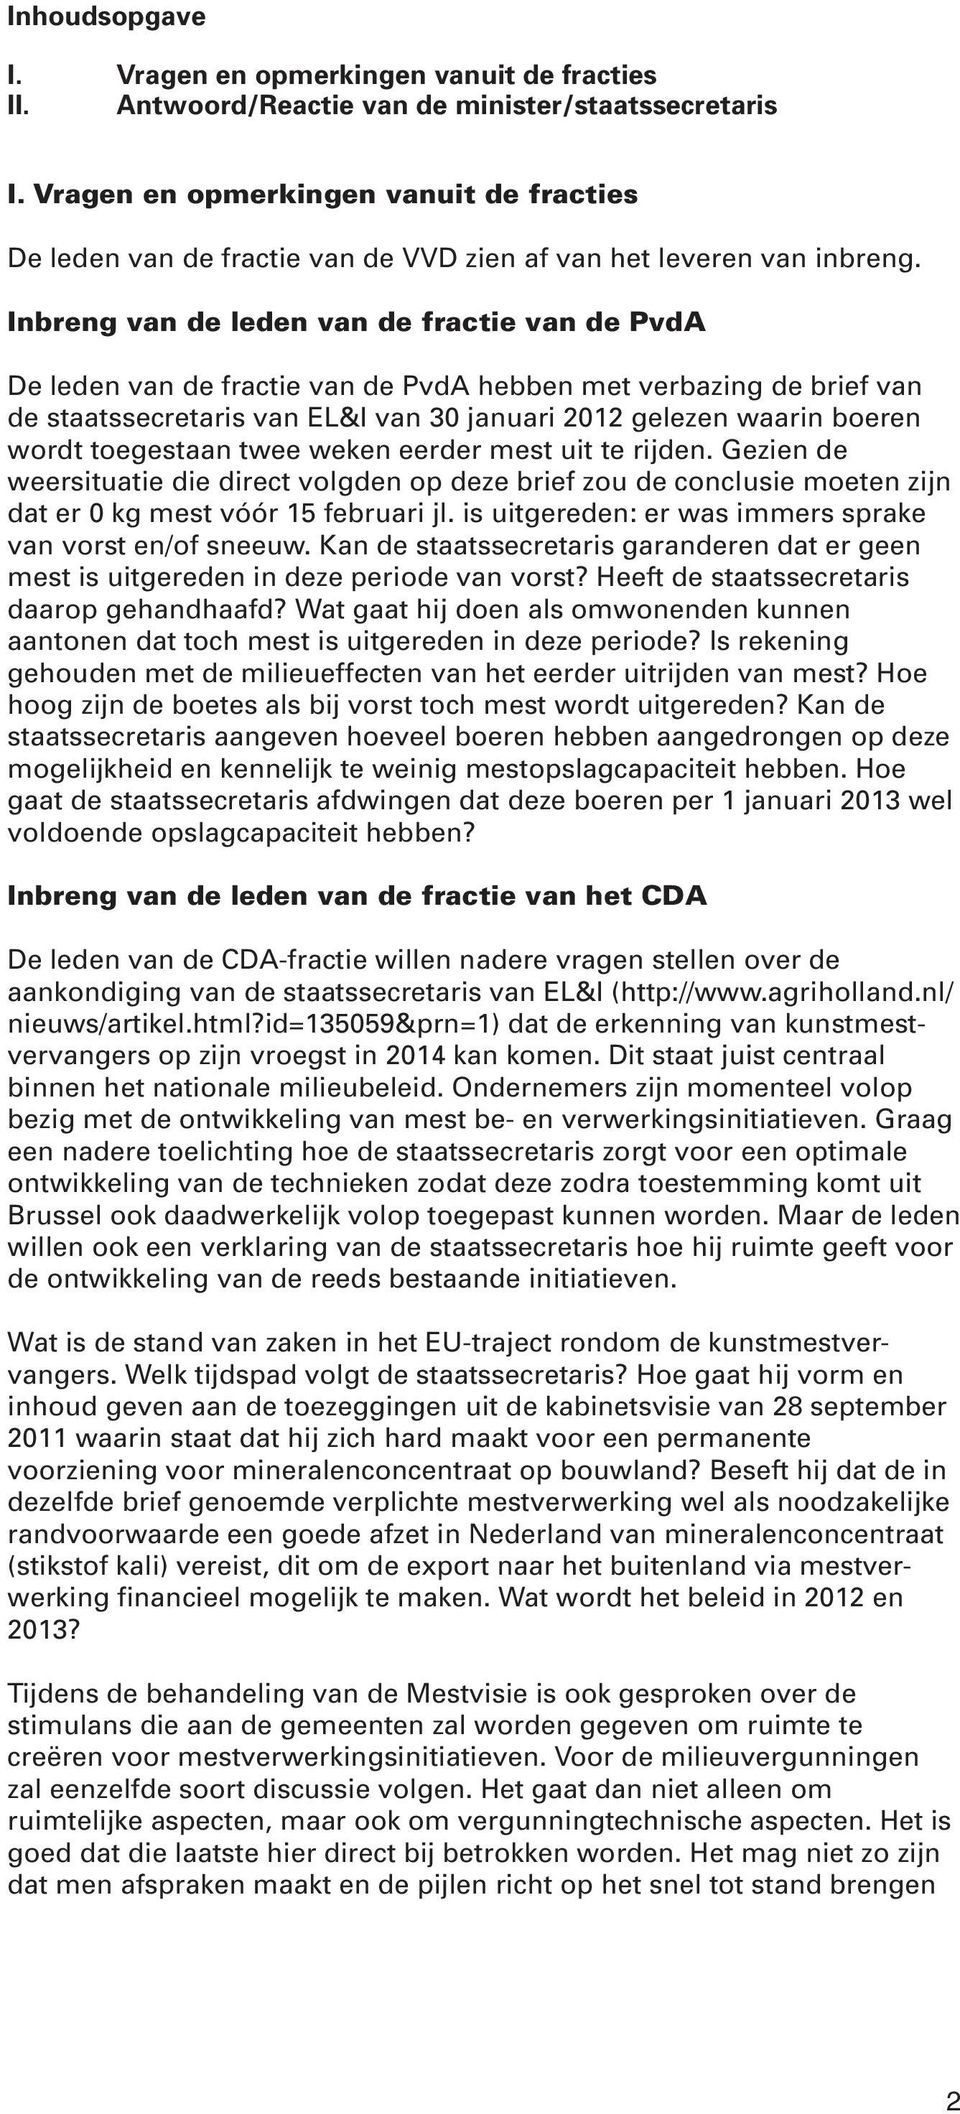 Inbreng van de leden van de fractie van de PvdA De leden van de fractie van de PvdA hebben met verbazing de brief van de staatssecretaris van EL&I van 30 januari 2012 gelezen waarin boeren wordt